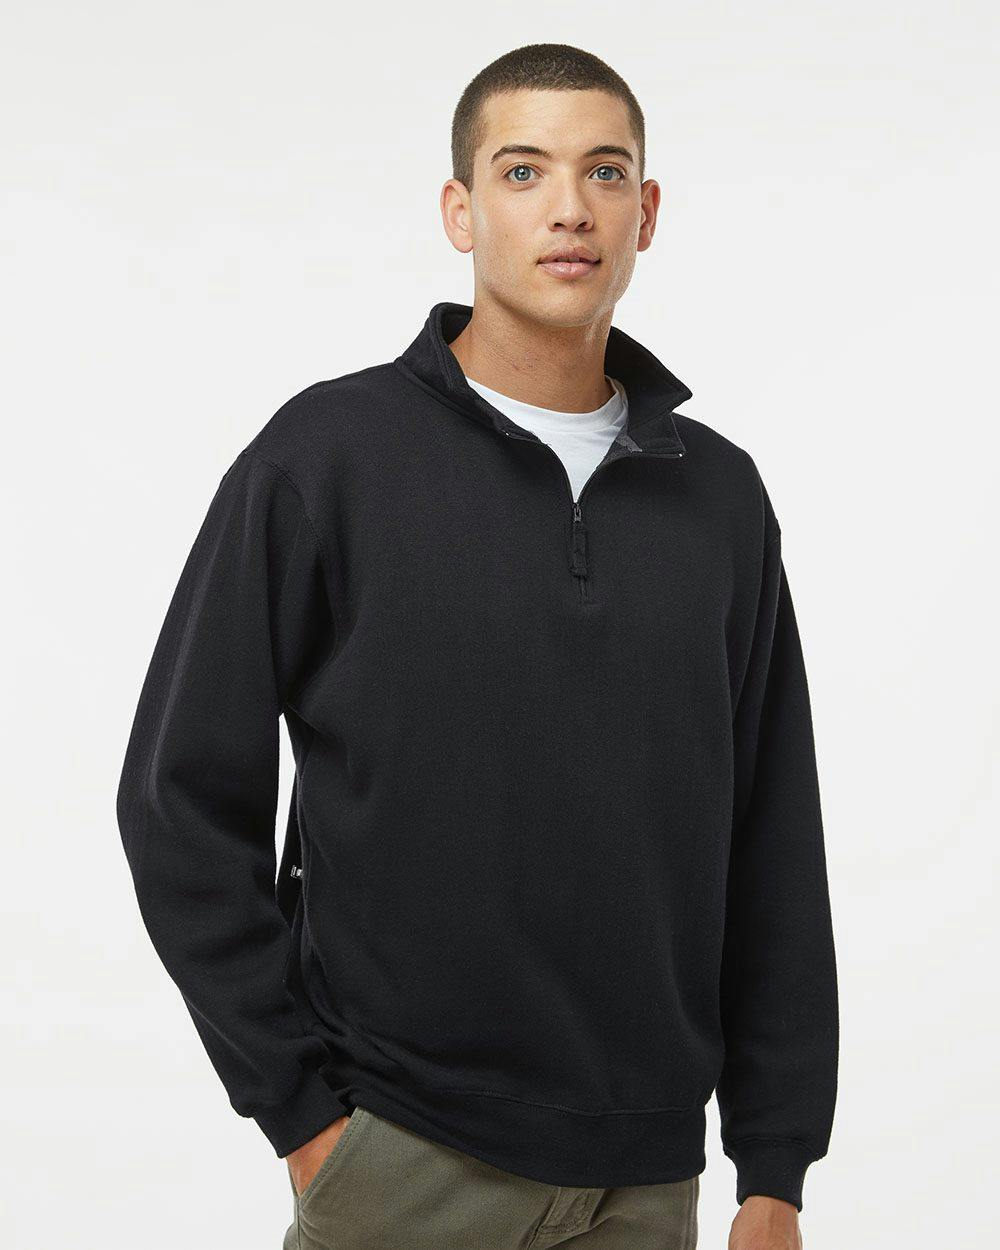 Image for Heavyweight Fleece Quarter-Zip Sweatshirt - 8634